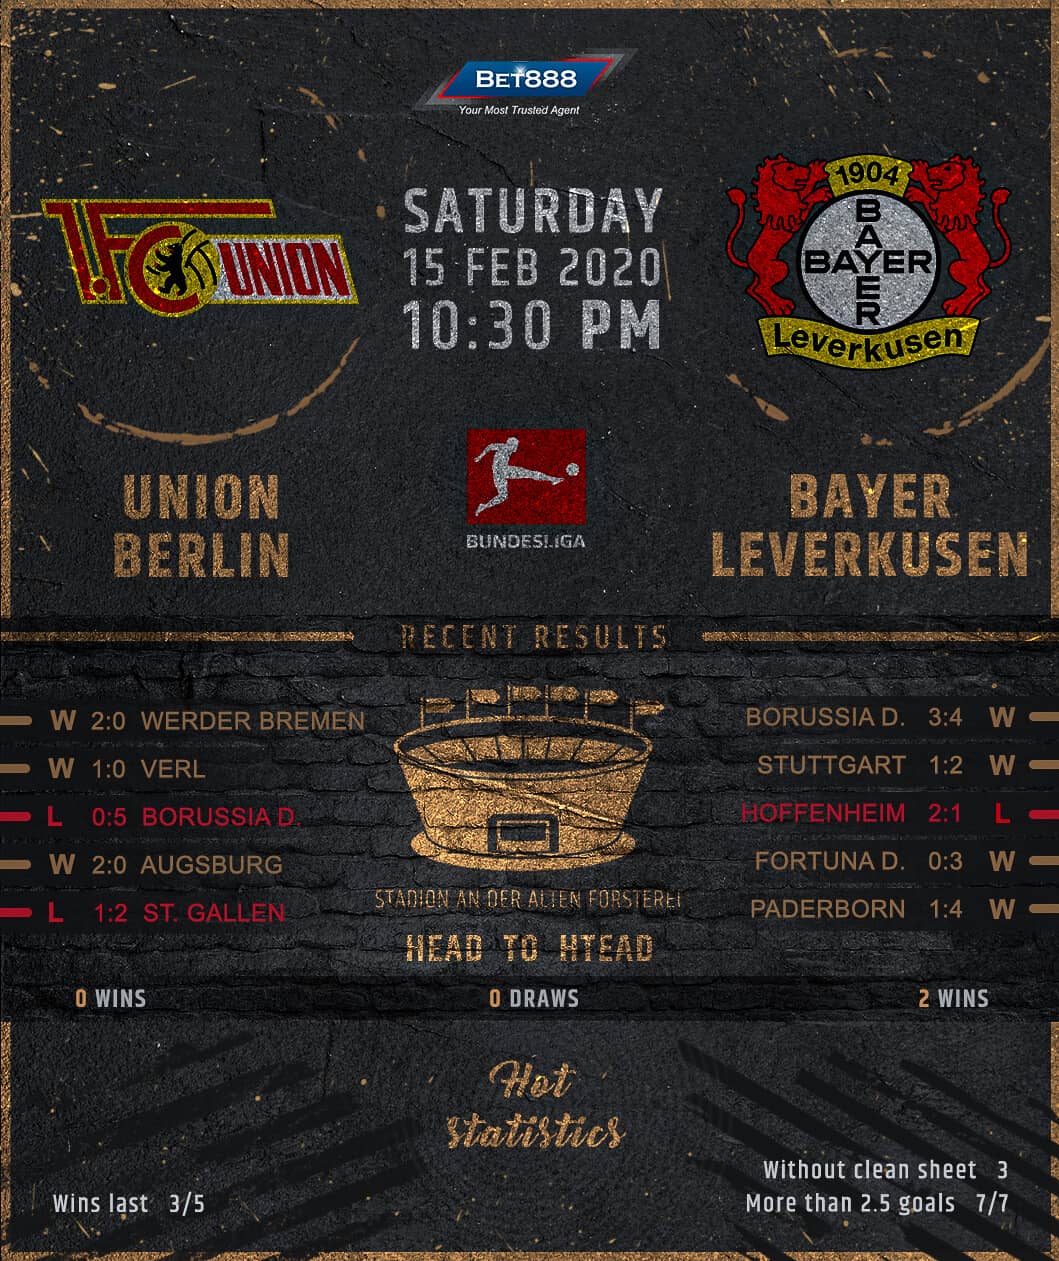 Union Berlin vs Bayer Leverkusen﻿ 15/02/20